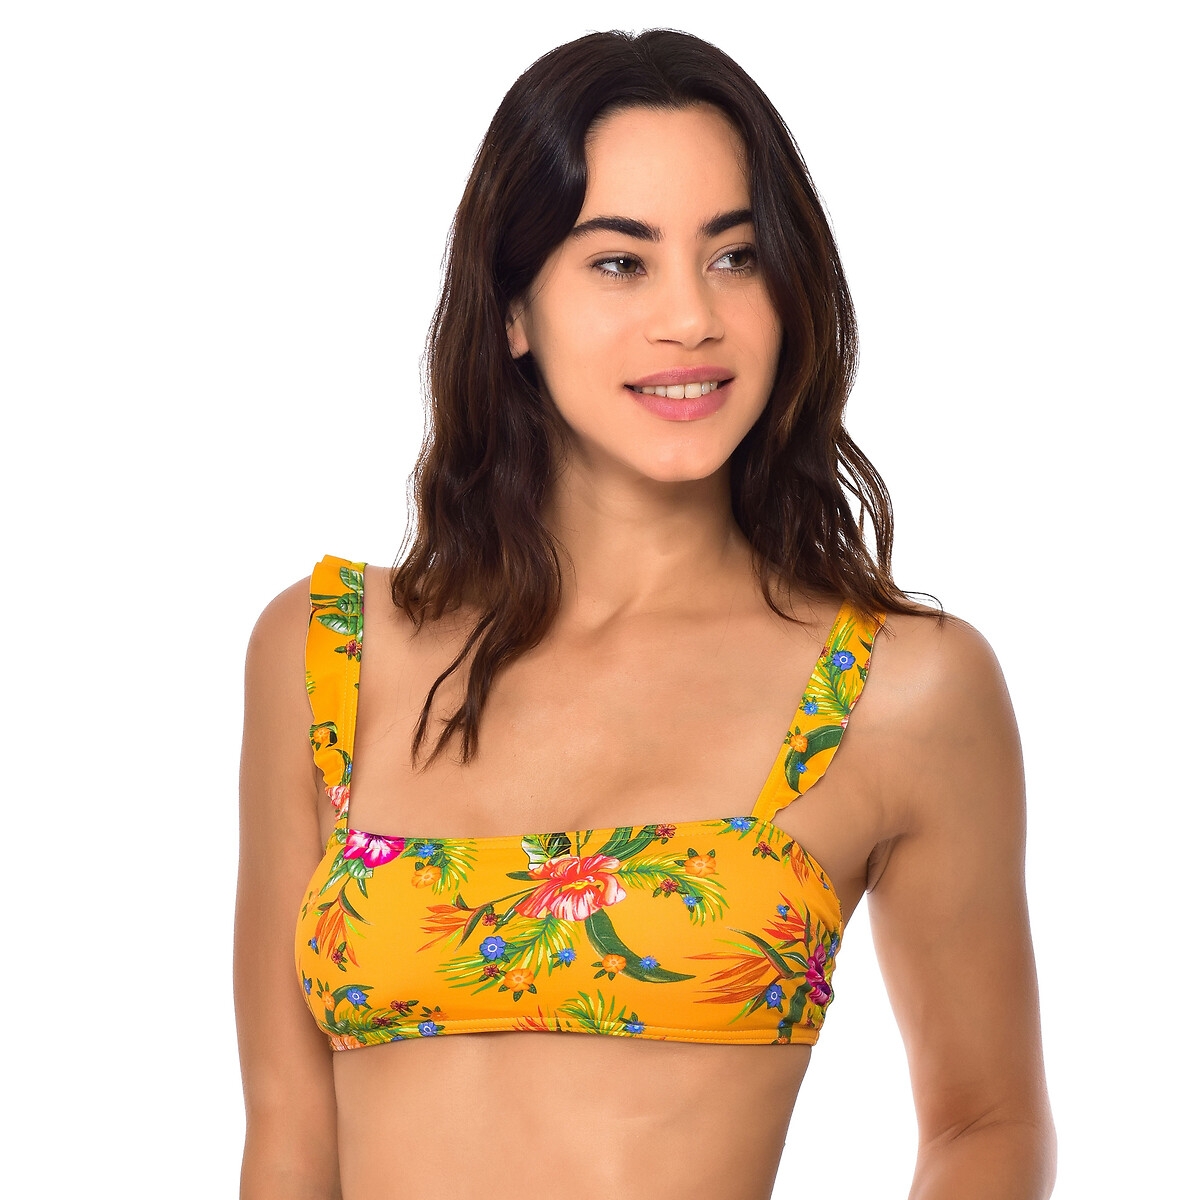 Danlo Aroha Bikini Top in Floral Print with Ruffles